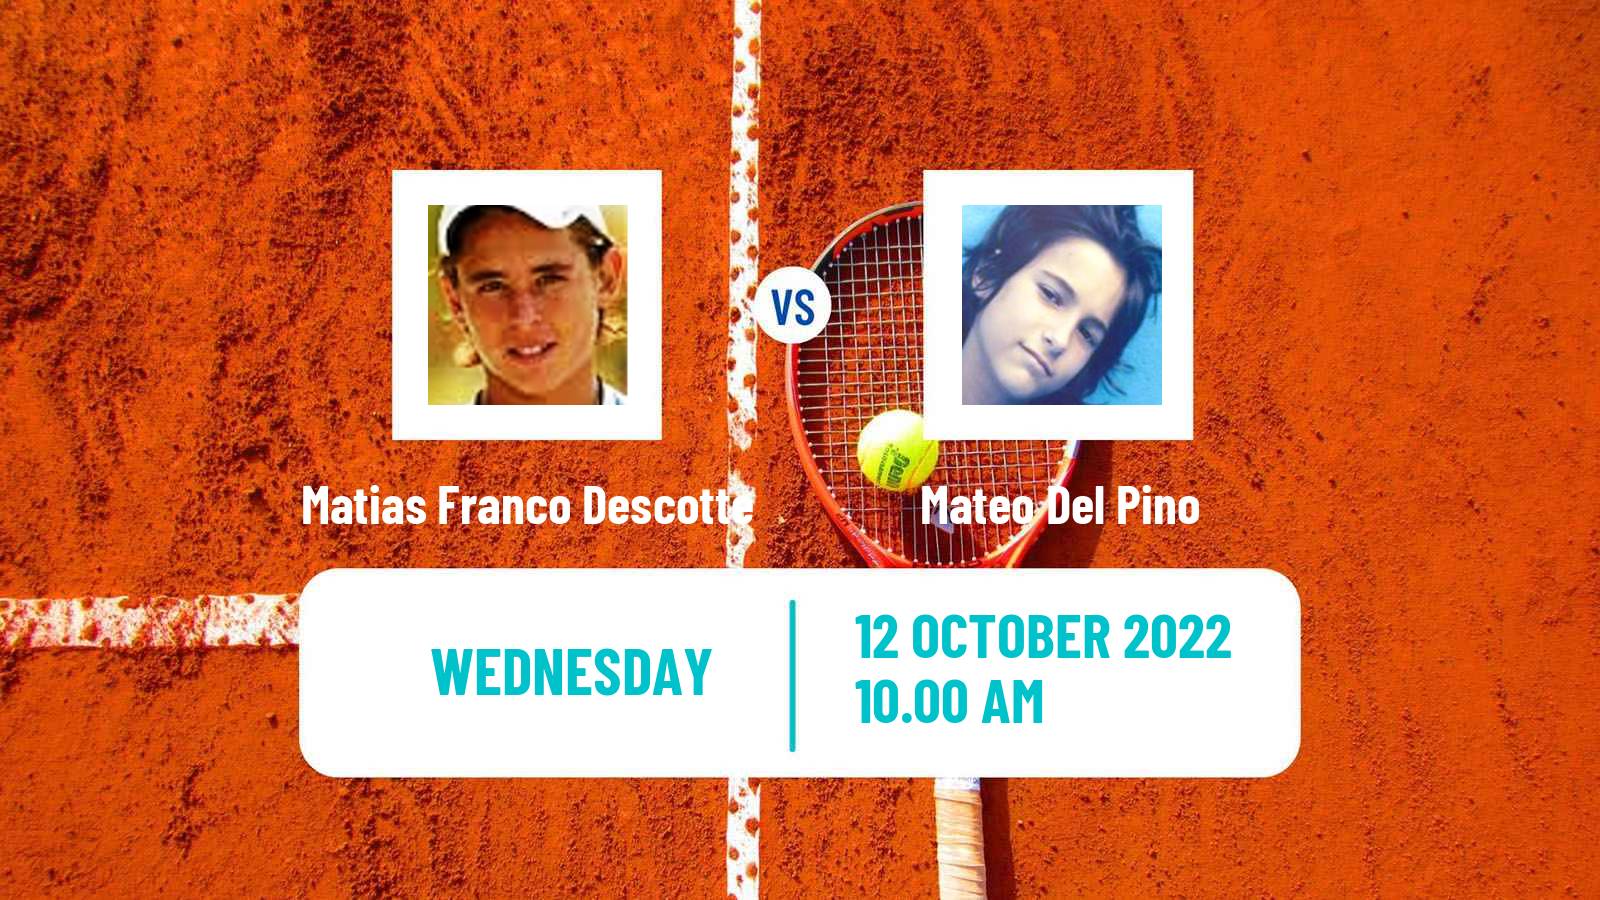 Tennis ITF Tournaments Matias Franco Descotte - Mateo Del Pino